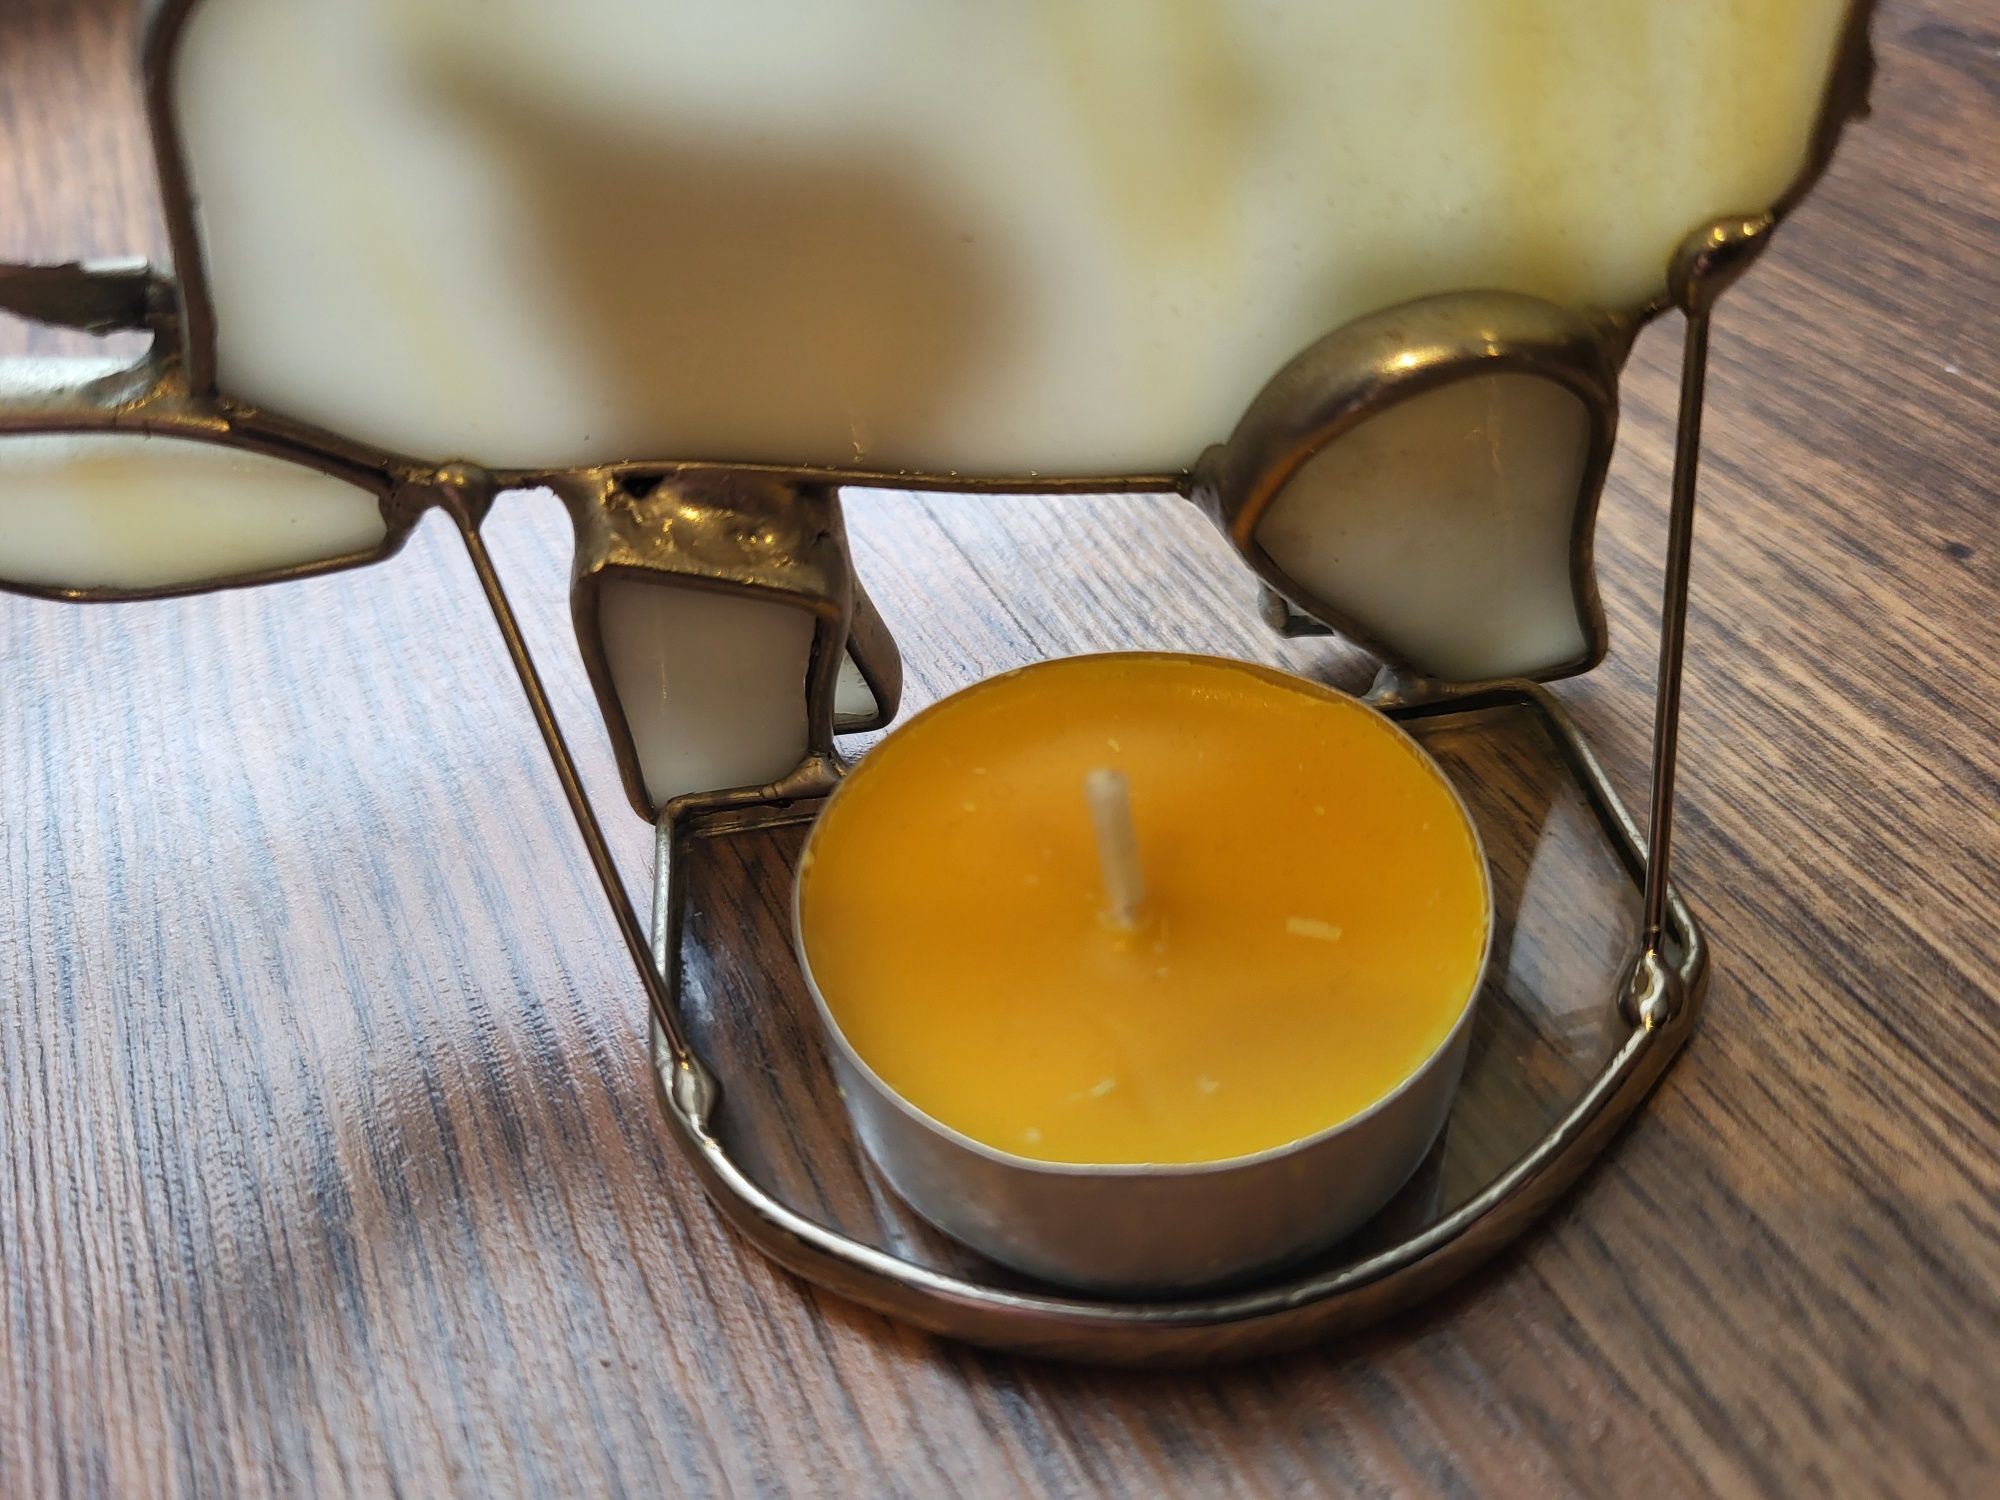 Piękny świecznik na tealighty - słoń, wymiary 8x13 cm